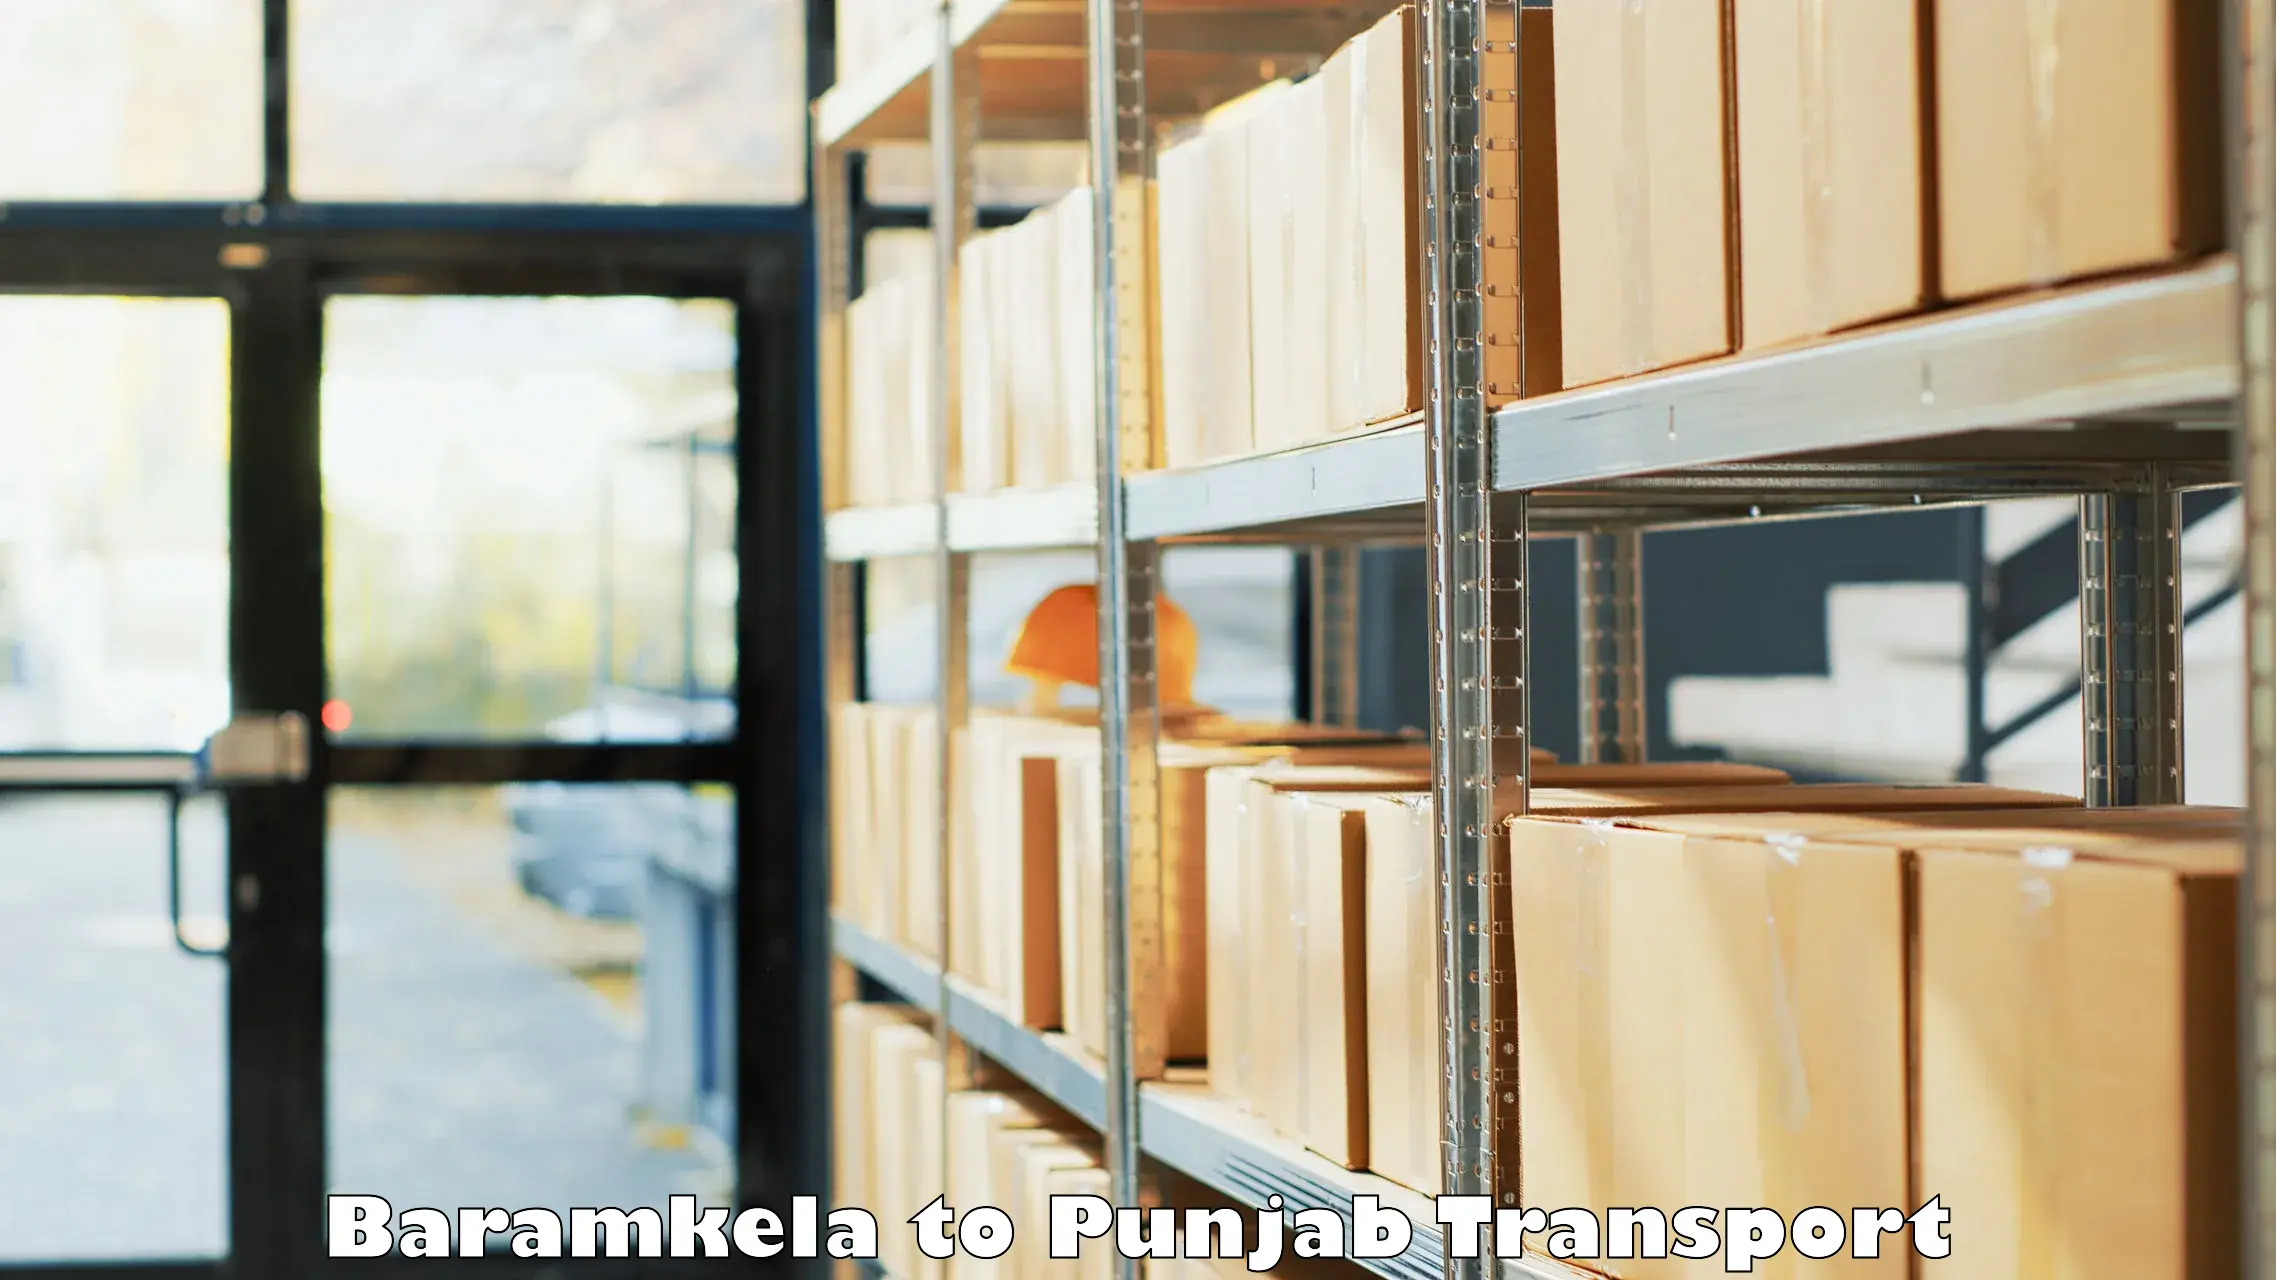 Express transport services Baramkela to Ludhiana